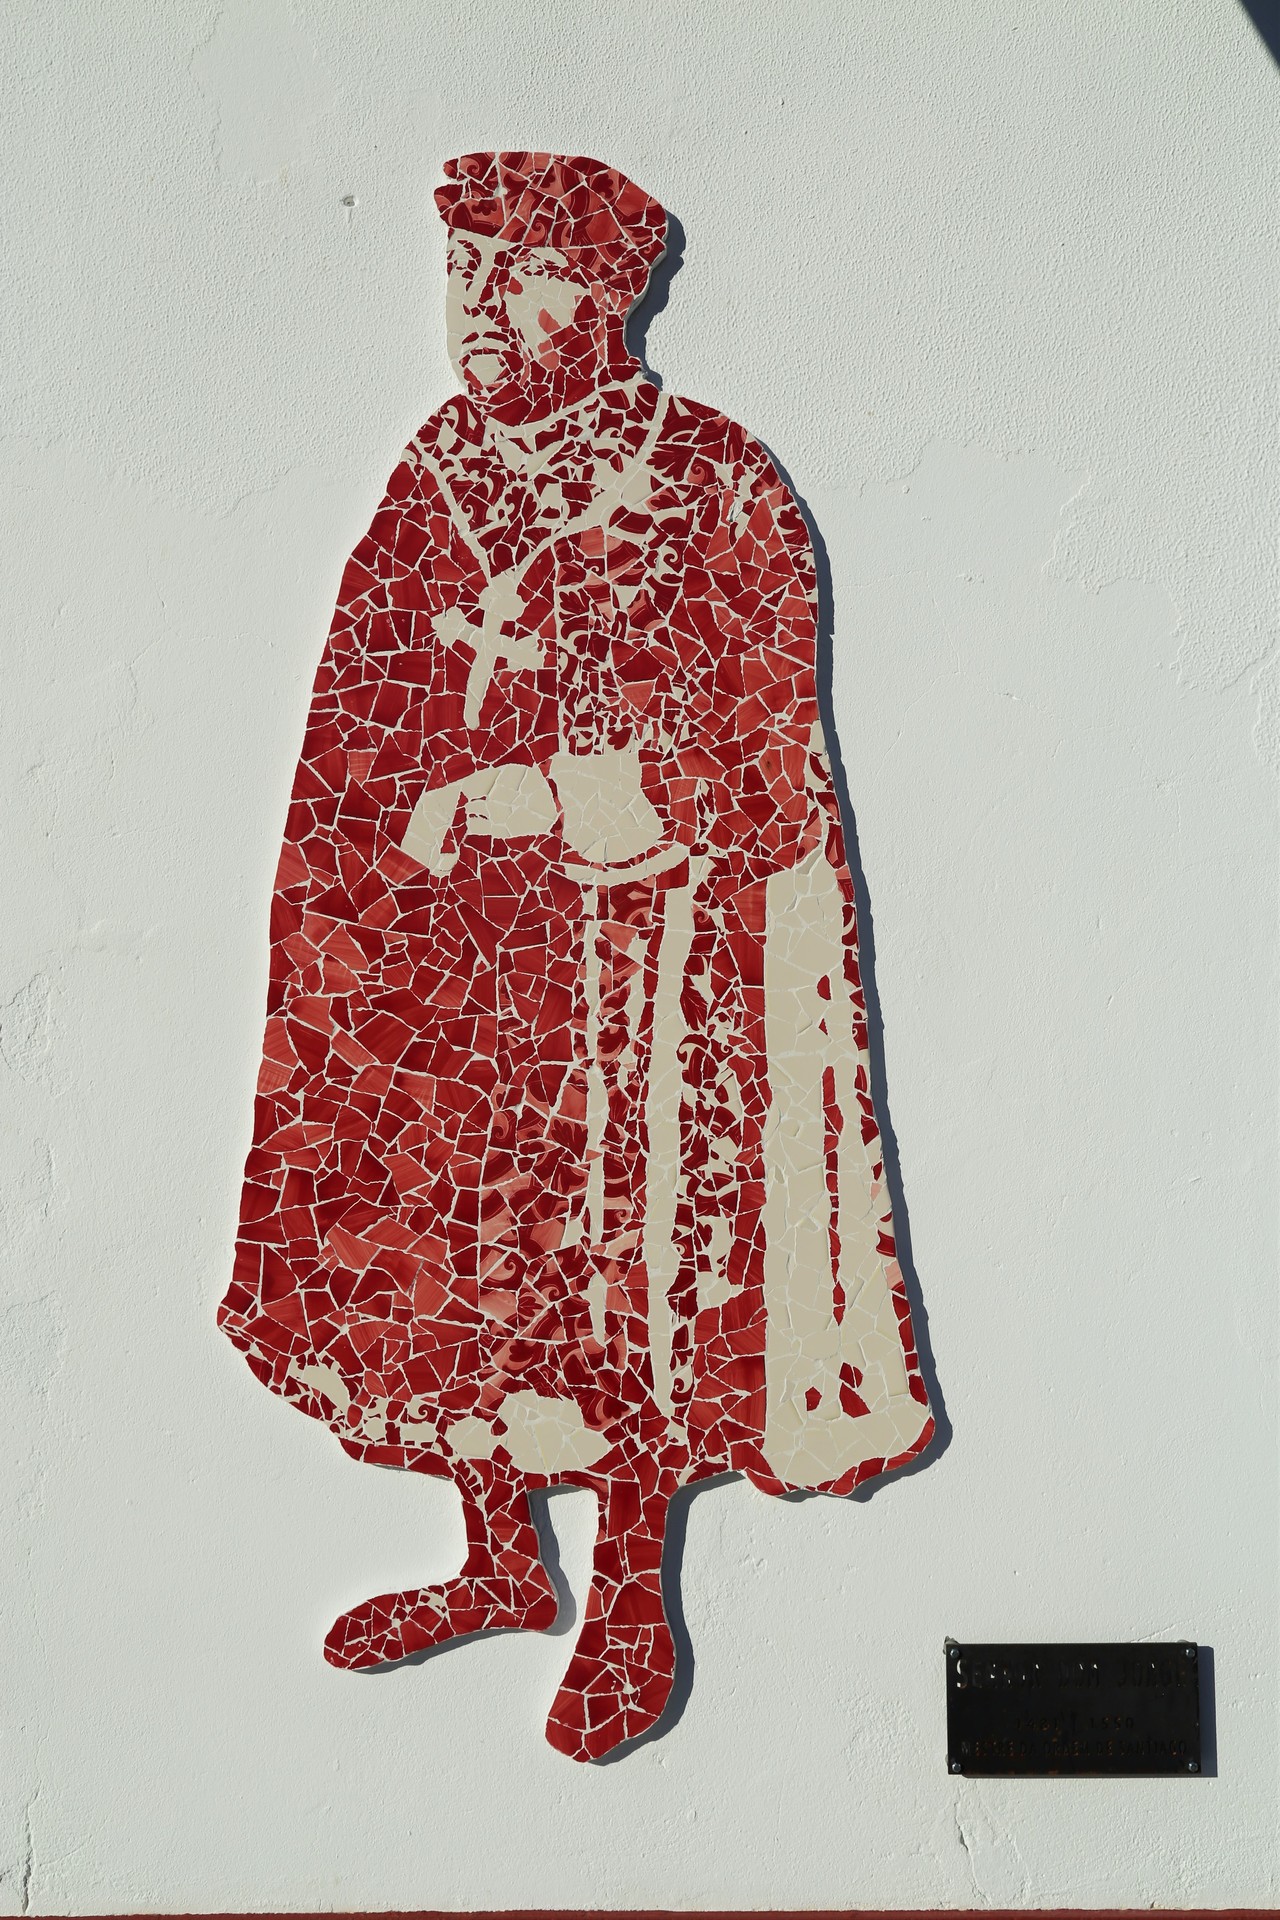 Mural de representação de D. Jorge – Mestre da Ordem de Santiago